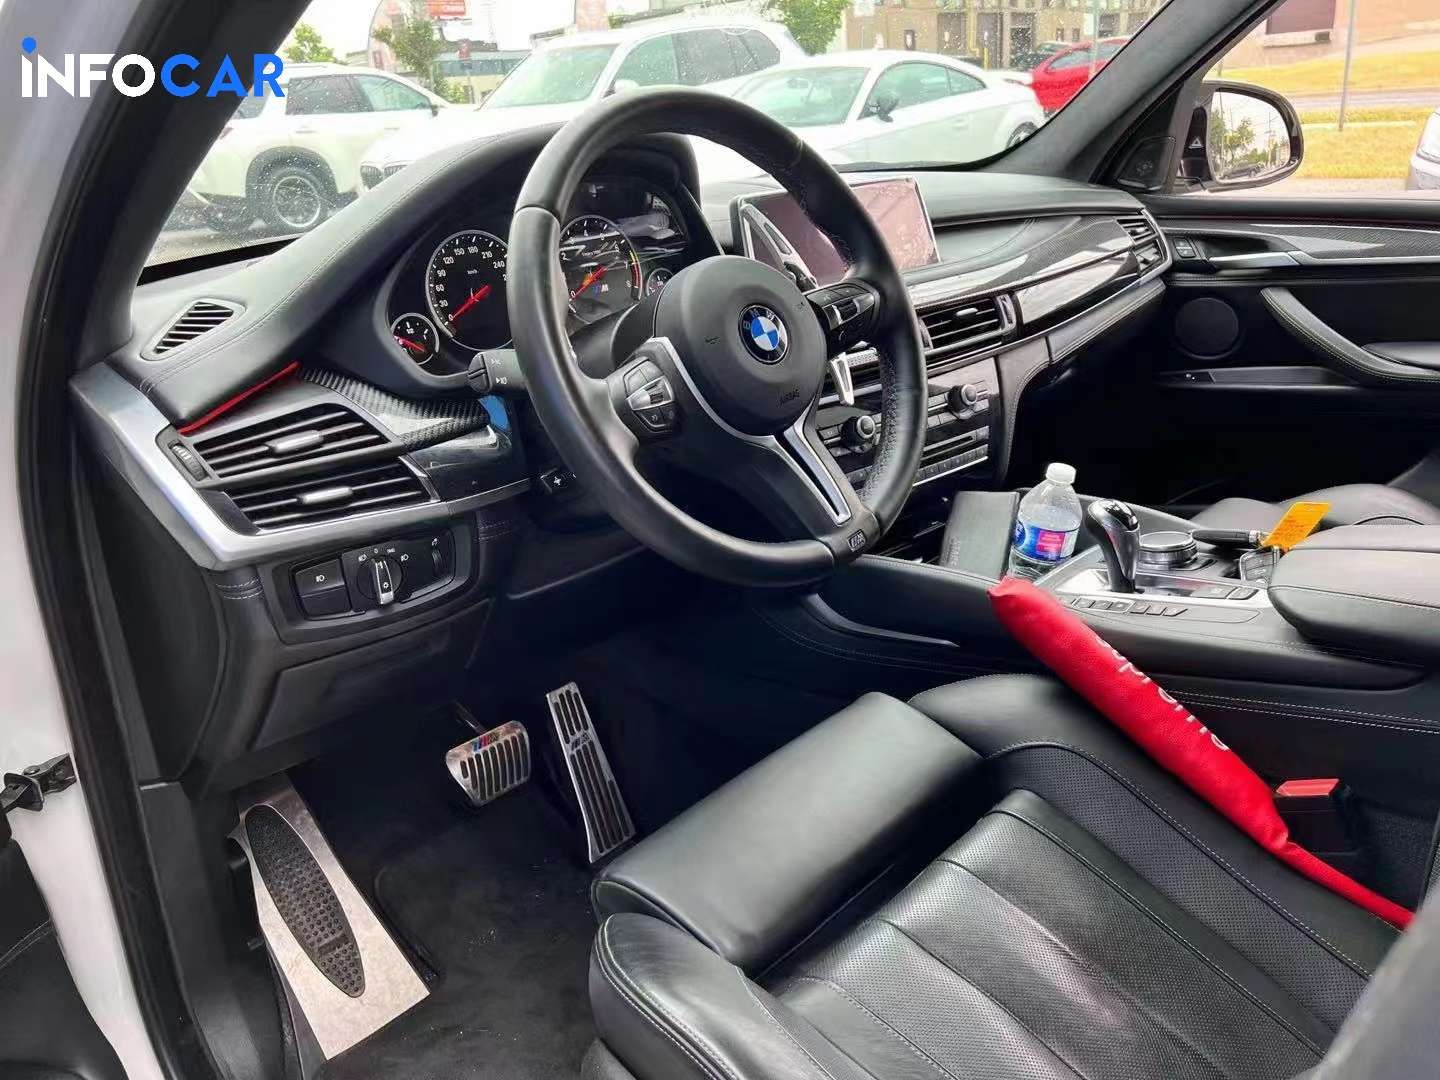 2017 BMW X5 M - INFOCAR - Toronto Auto Trading Platform